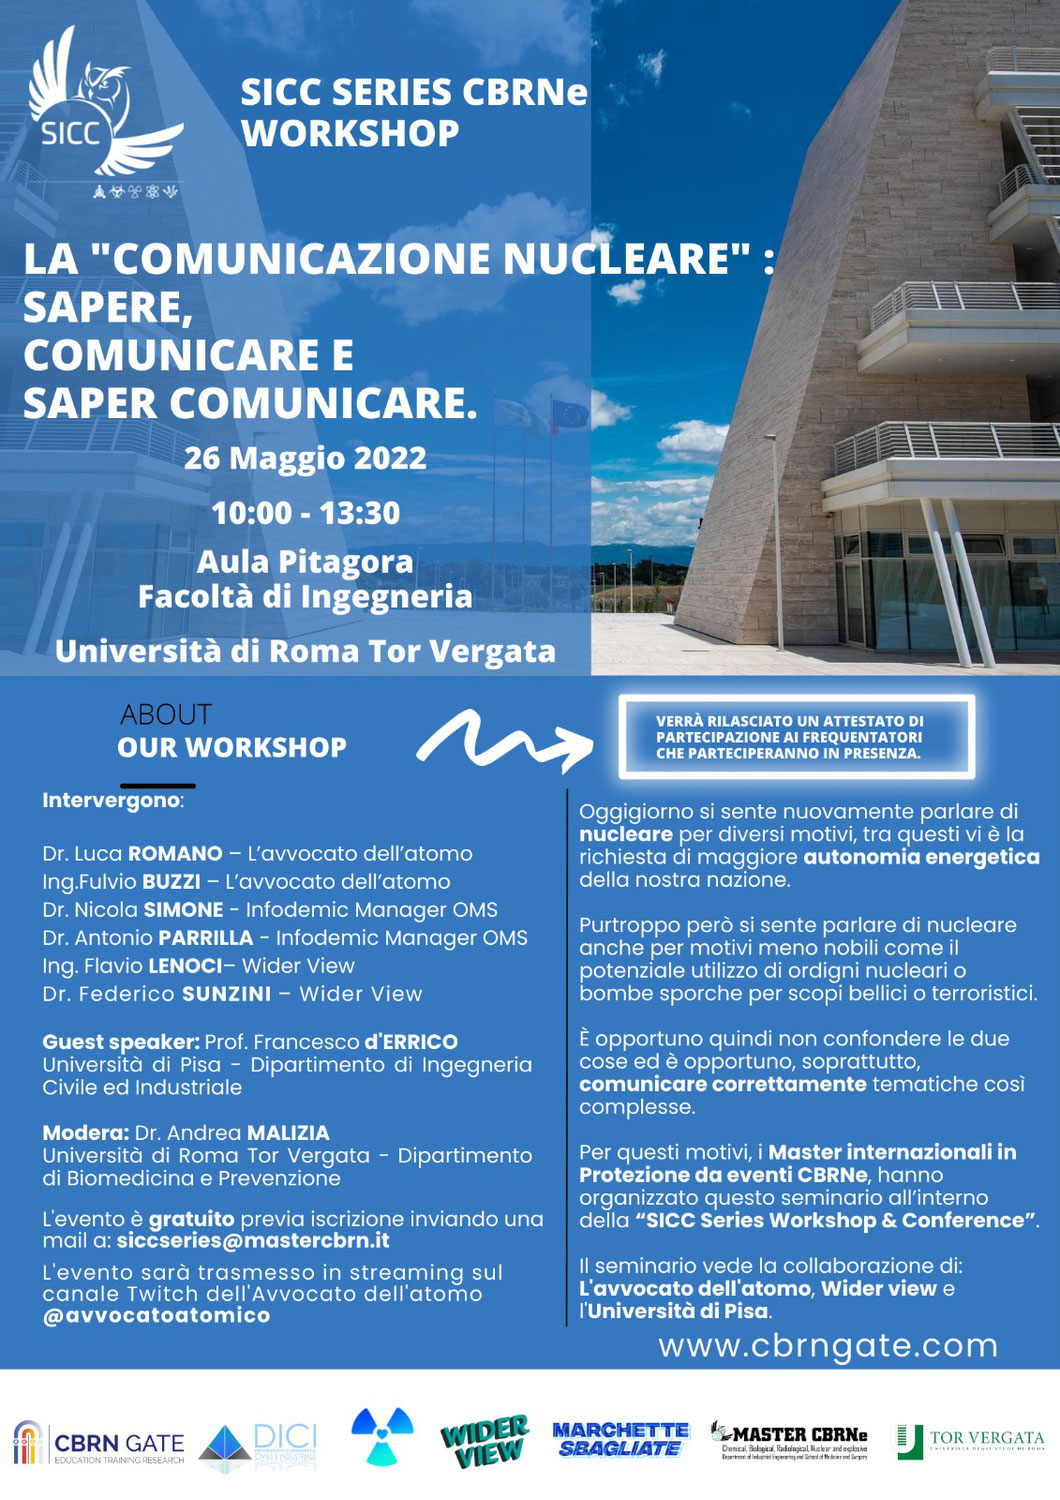 Seminario "LA COMUNICAZIONE NUCLEARE"  - SAPERE, COMUNICARE e SAPER COMUNICARE "   